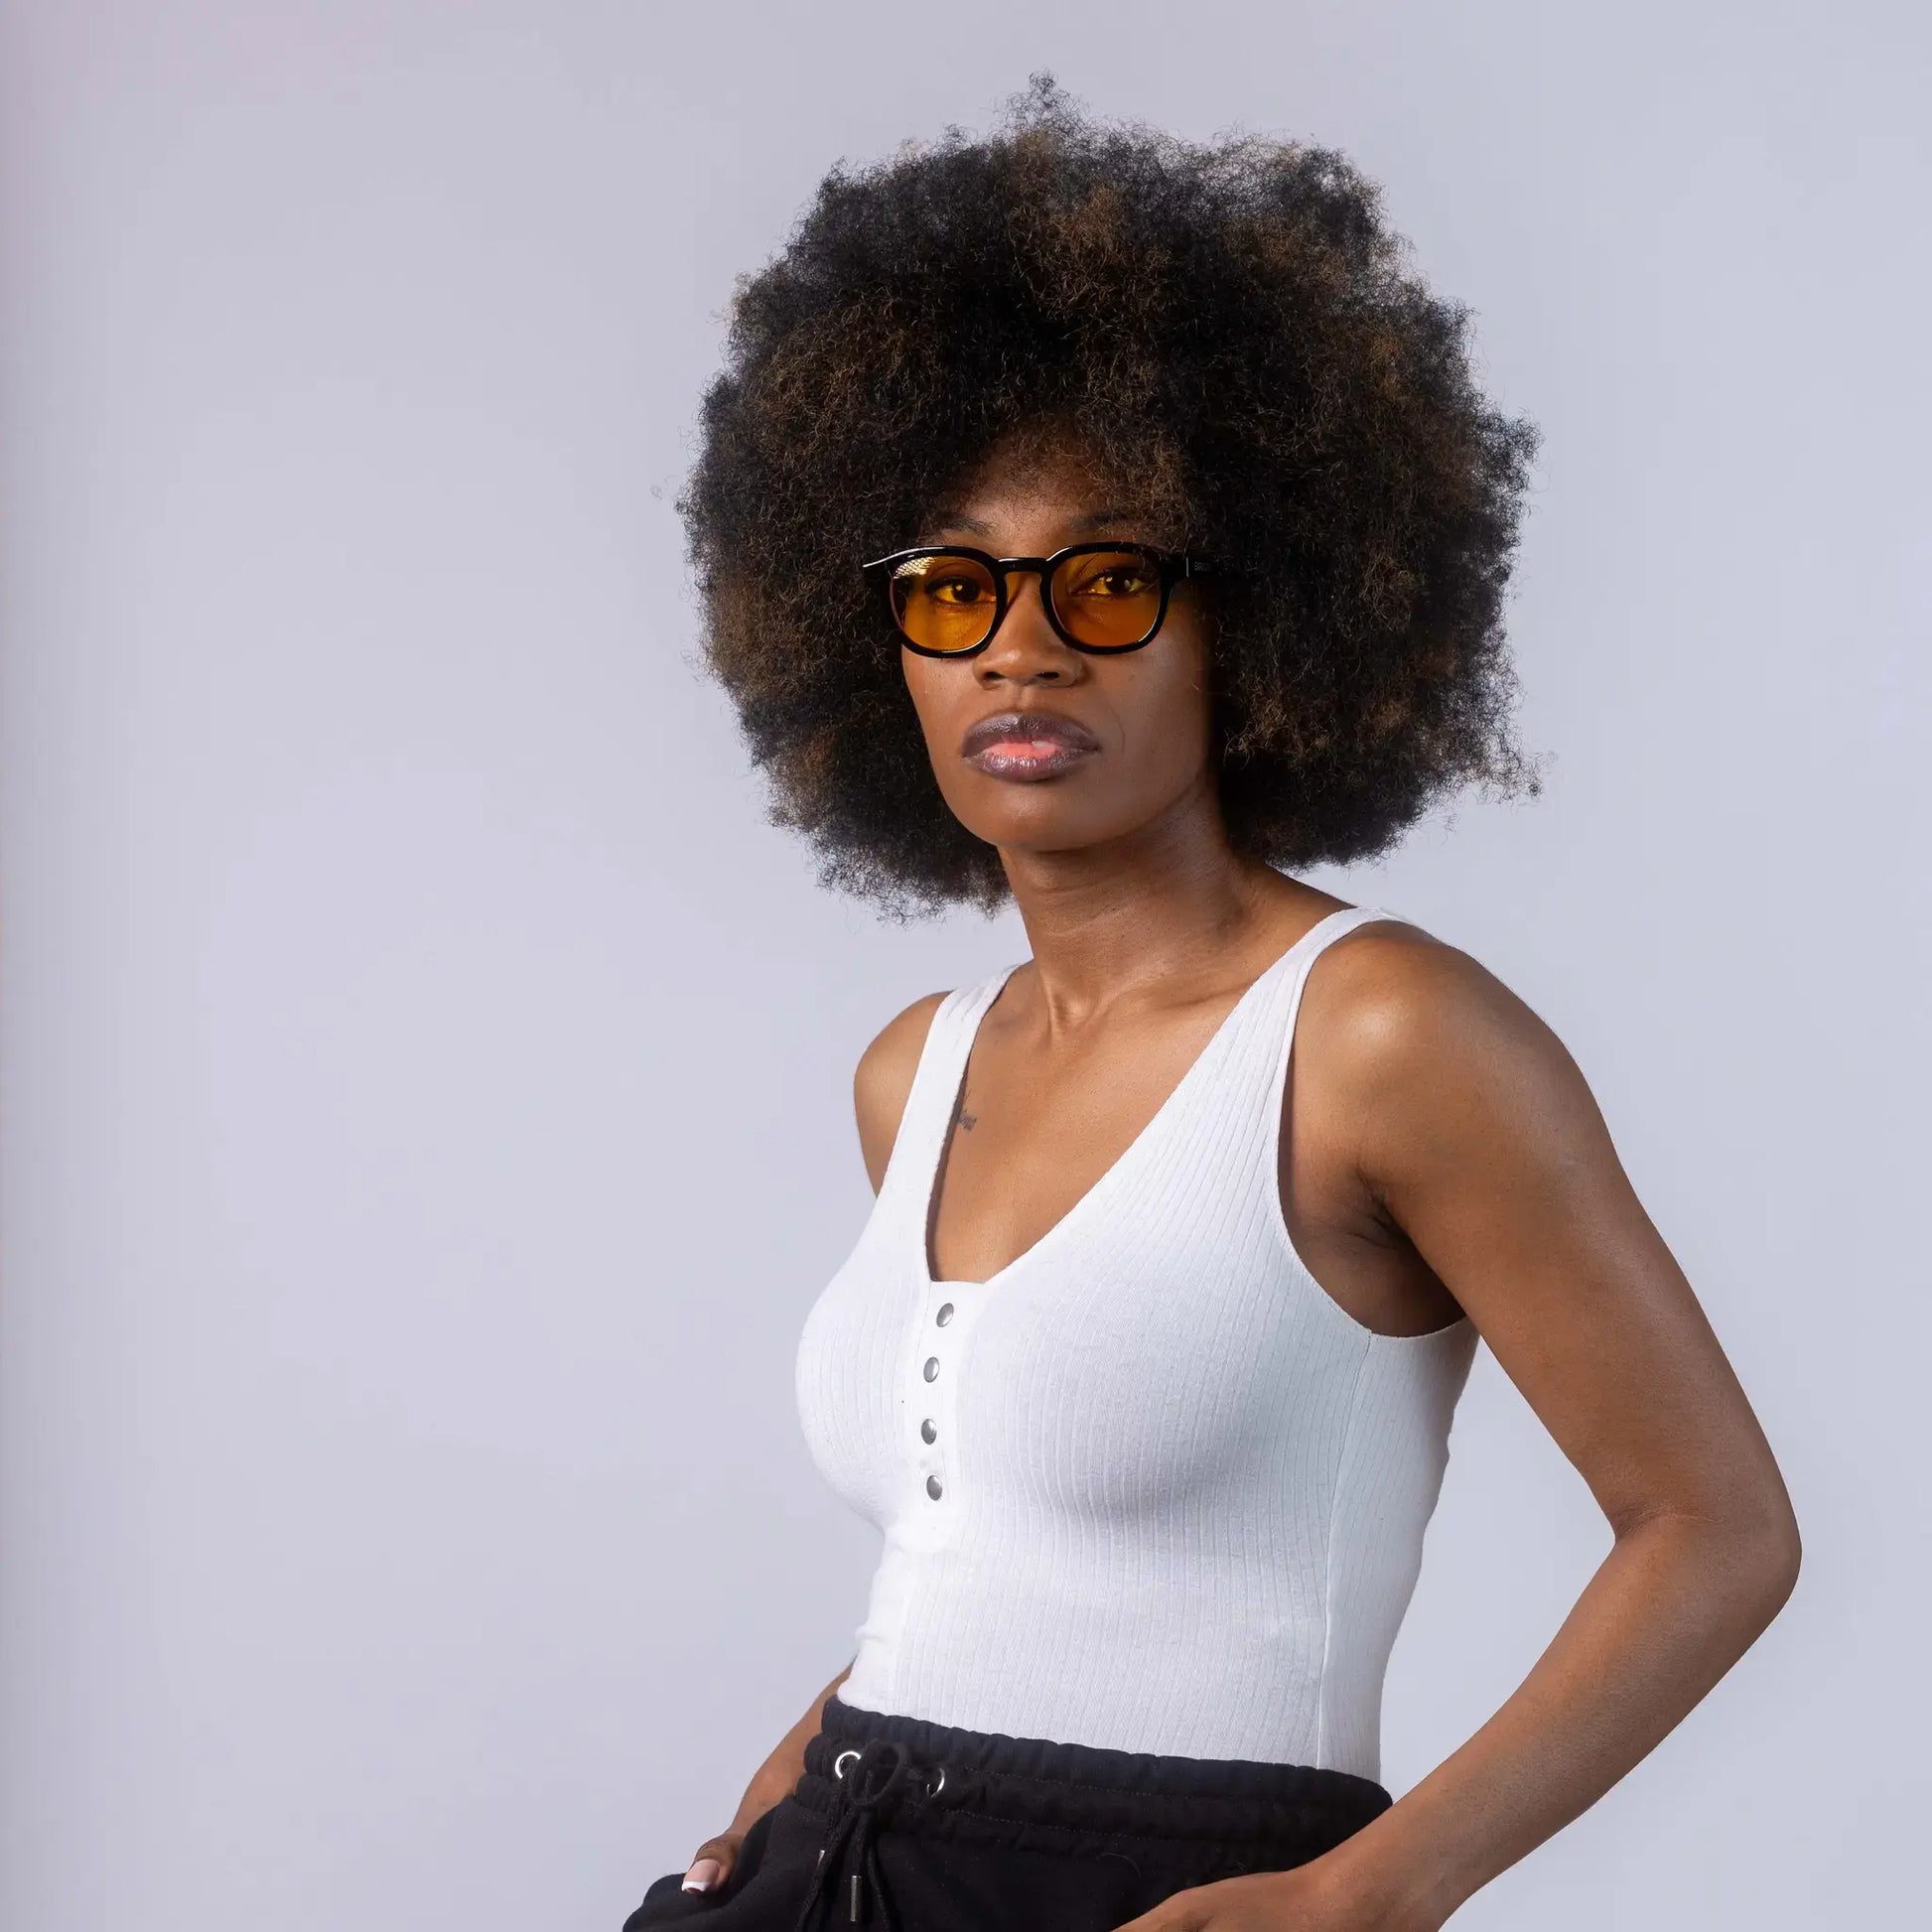 Γυαλιά ηλίου Montreal της Exposure Sunglasses με προστασία UV400 με μαύρο σκελετό και κίτρινο φακό. Φορεμένα από μοντέλο.